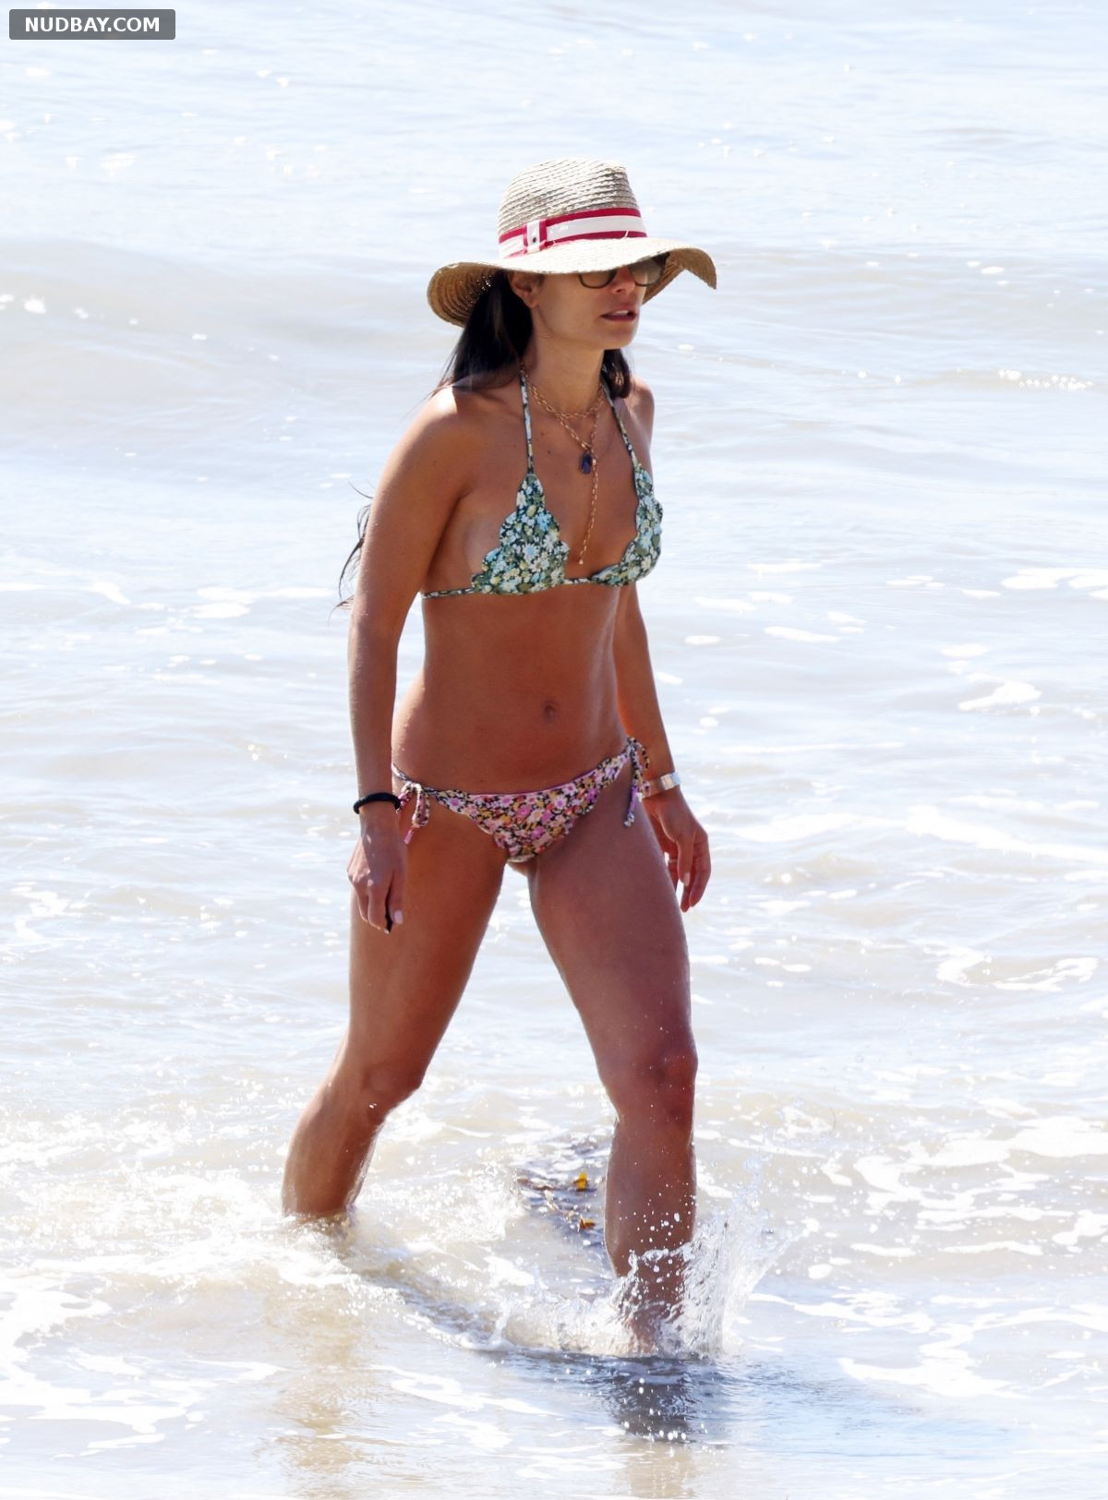 Jordana Brewster Naked at a Beach in Santa Barbara Sep 27 2022